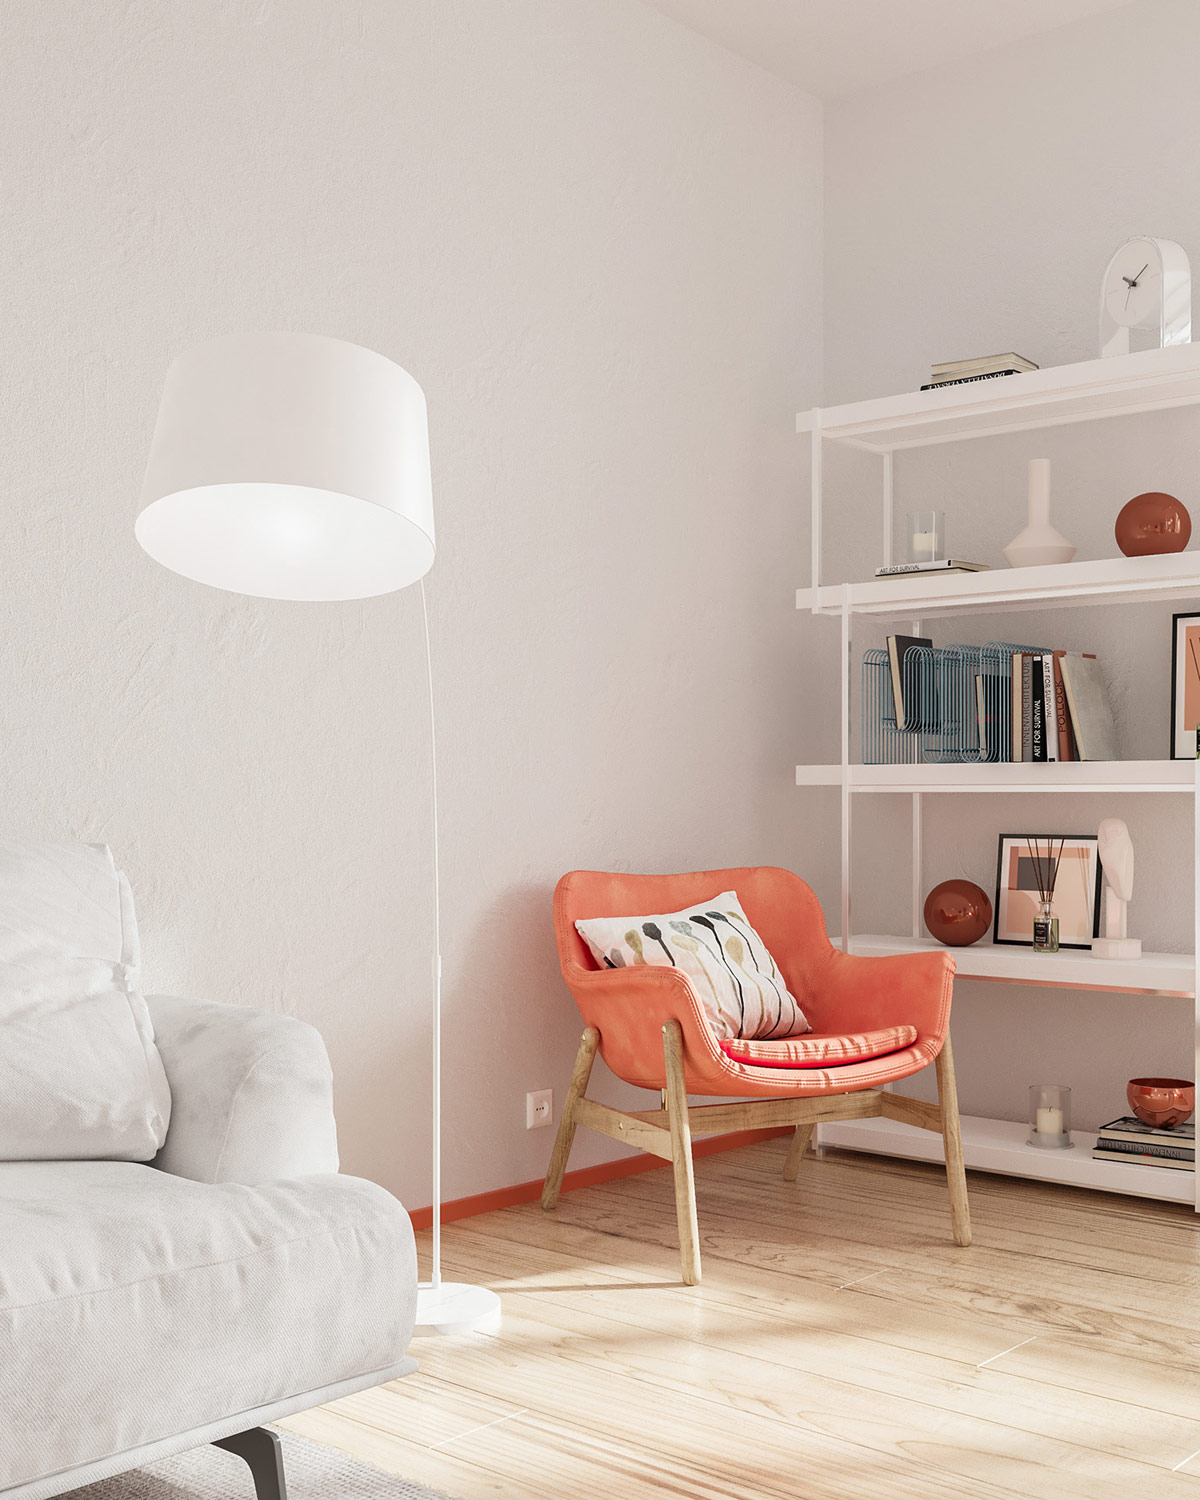 Hình ảnh góc đọc sách, thư giãn trong căn hộ 25m2 nổi bật với ghế bành màu cam